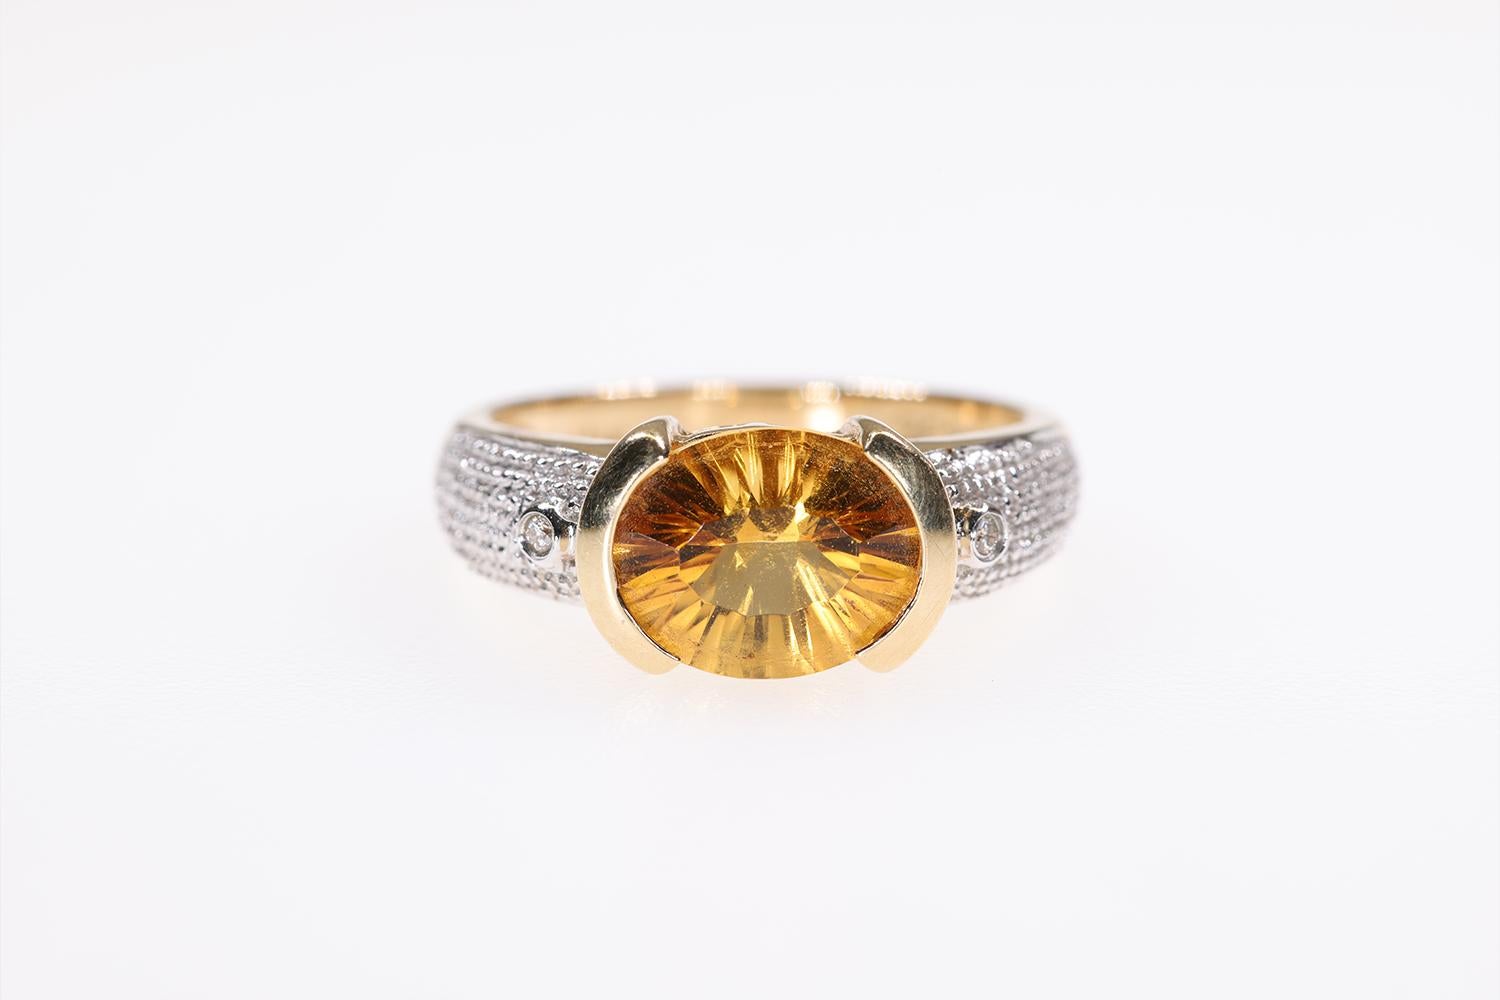 Dies ist eine schöne LeVian Oval Citrin Mode Ring aus 14K Gelb und 14K Weißgold. Er wird von zwei kleinen Diamanten akzentuiert. Der Mittelstein ist ein Citrin von schöner tiefer Farbe.